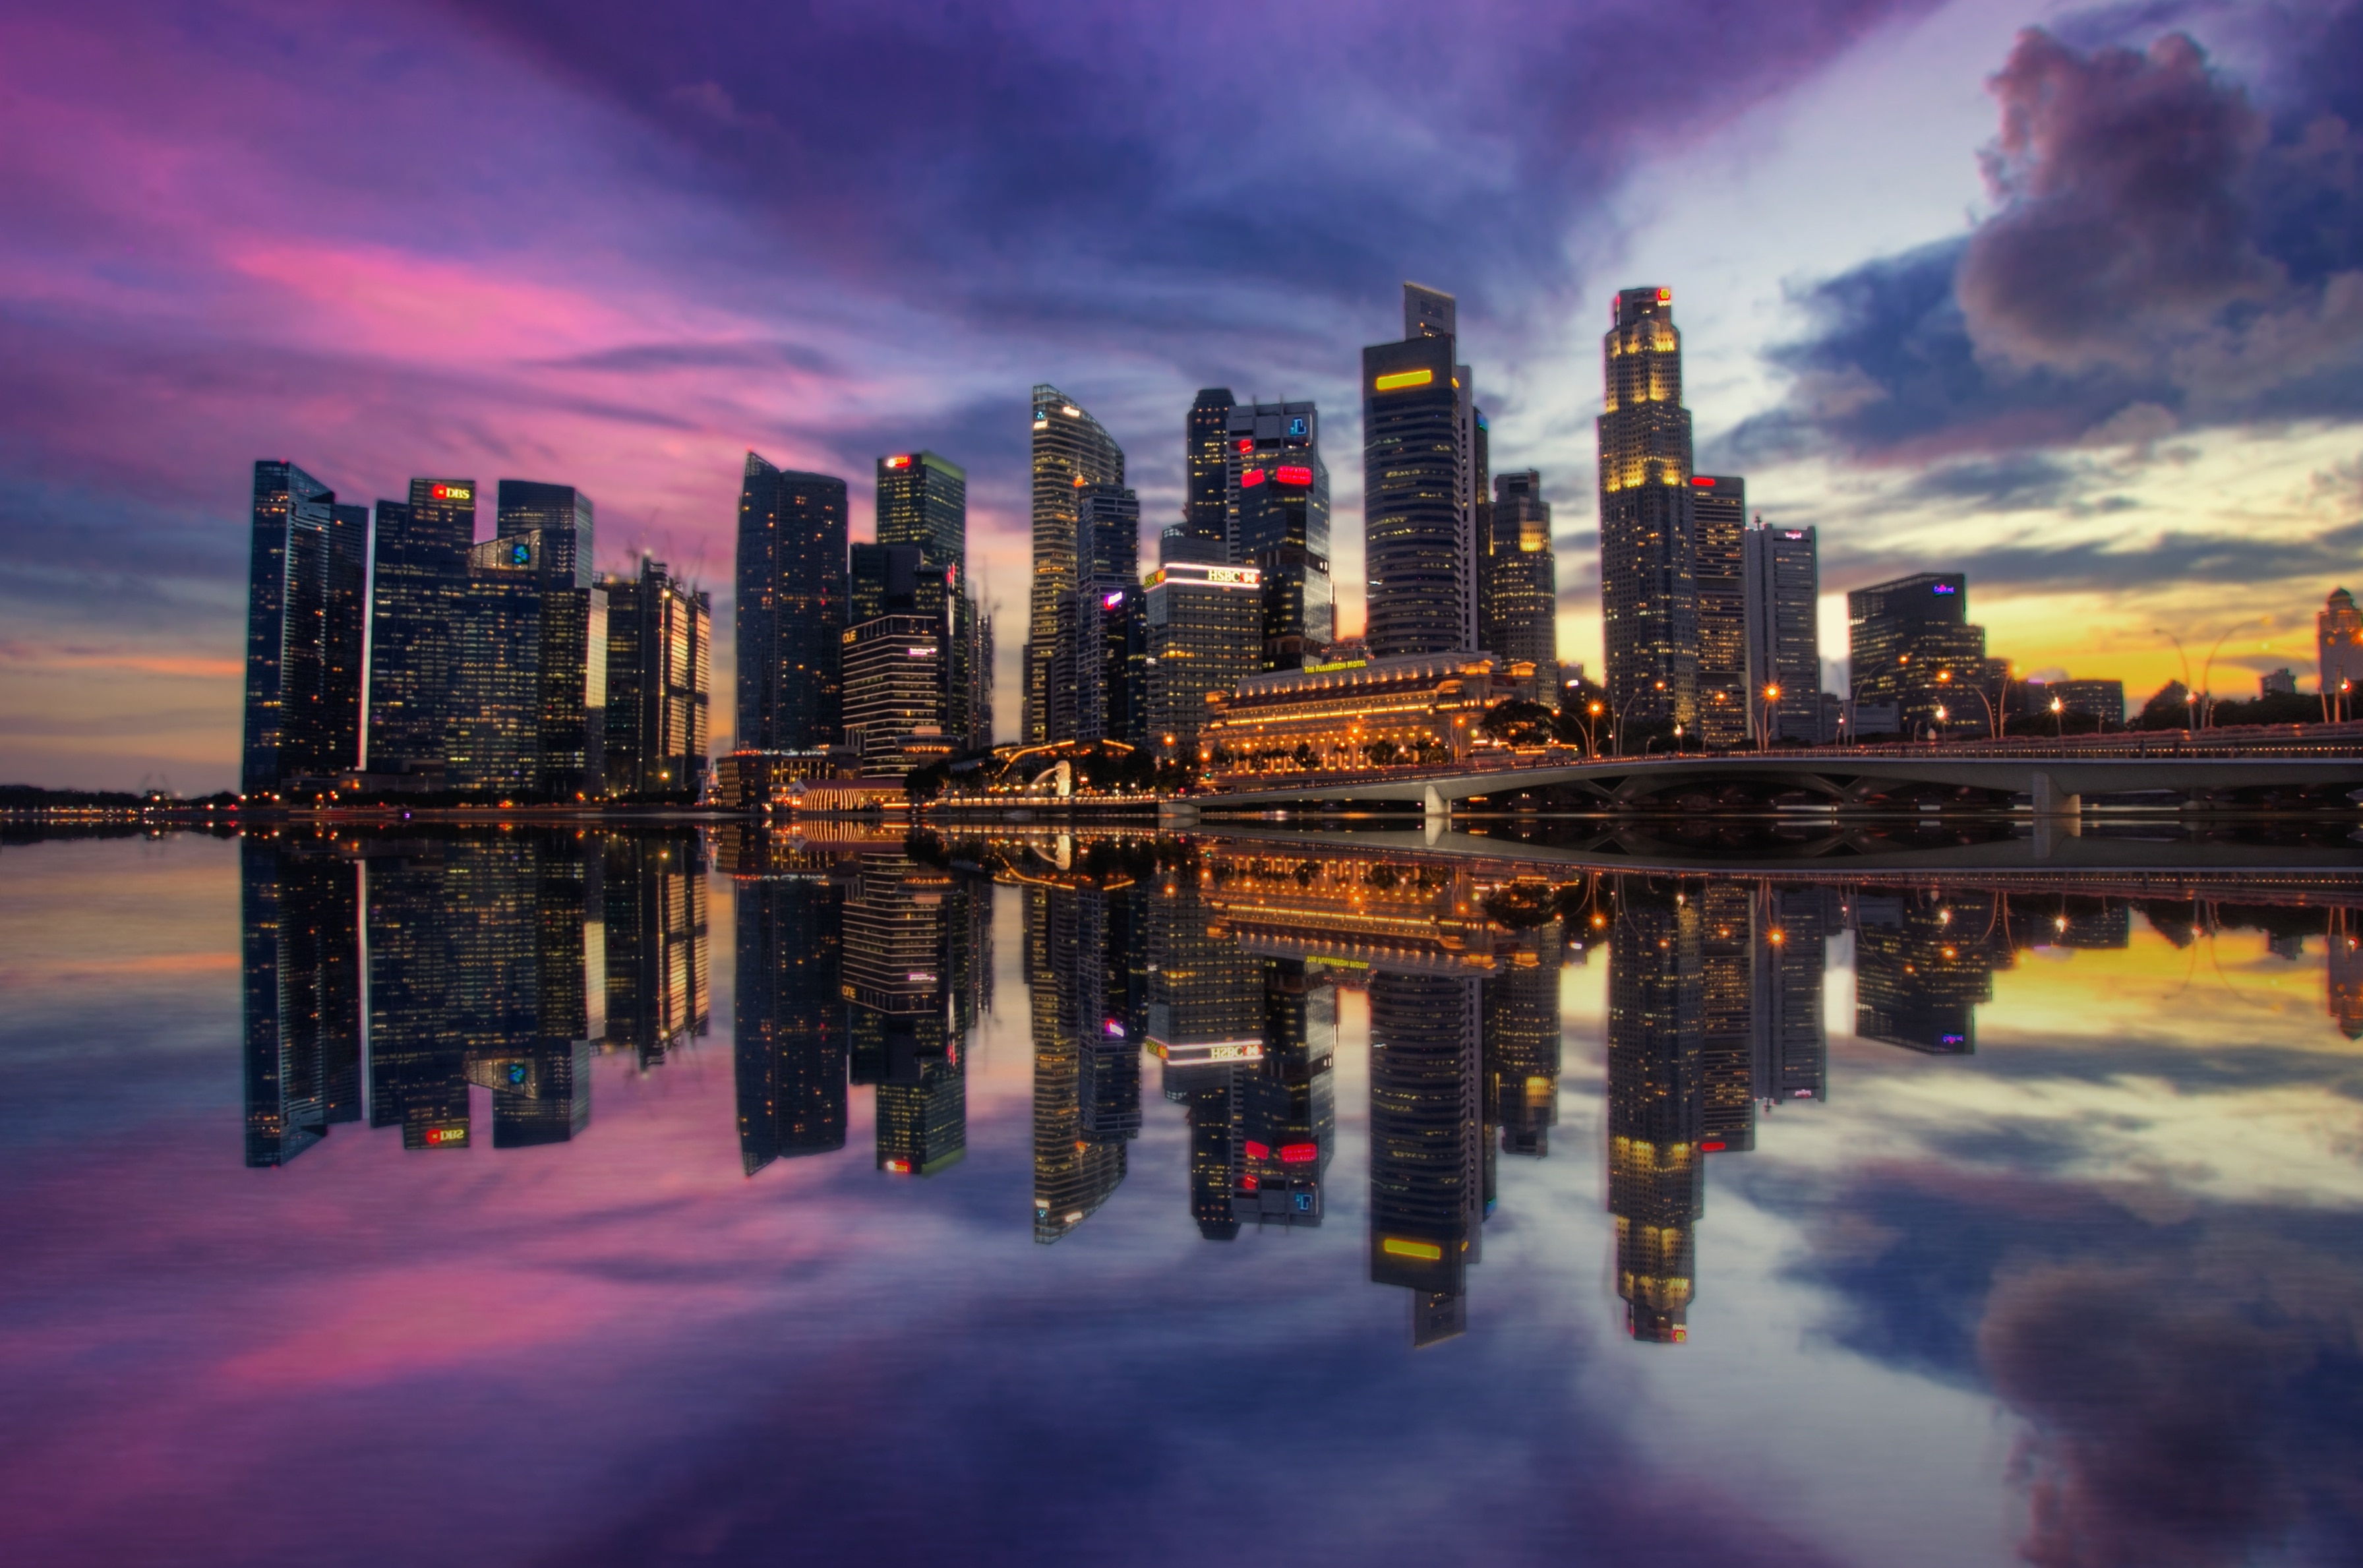 Sunset, Singapore, Sunrise, Marina Bay, reflection, cloud - sky